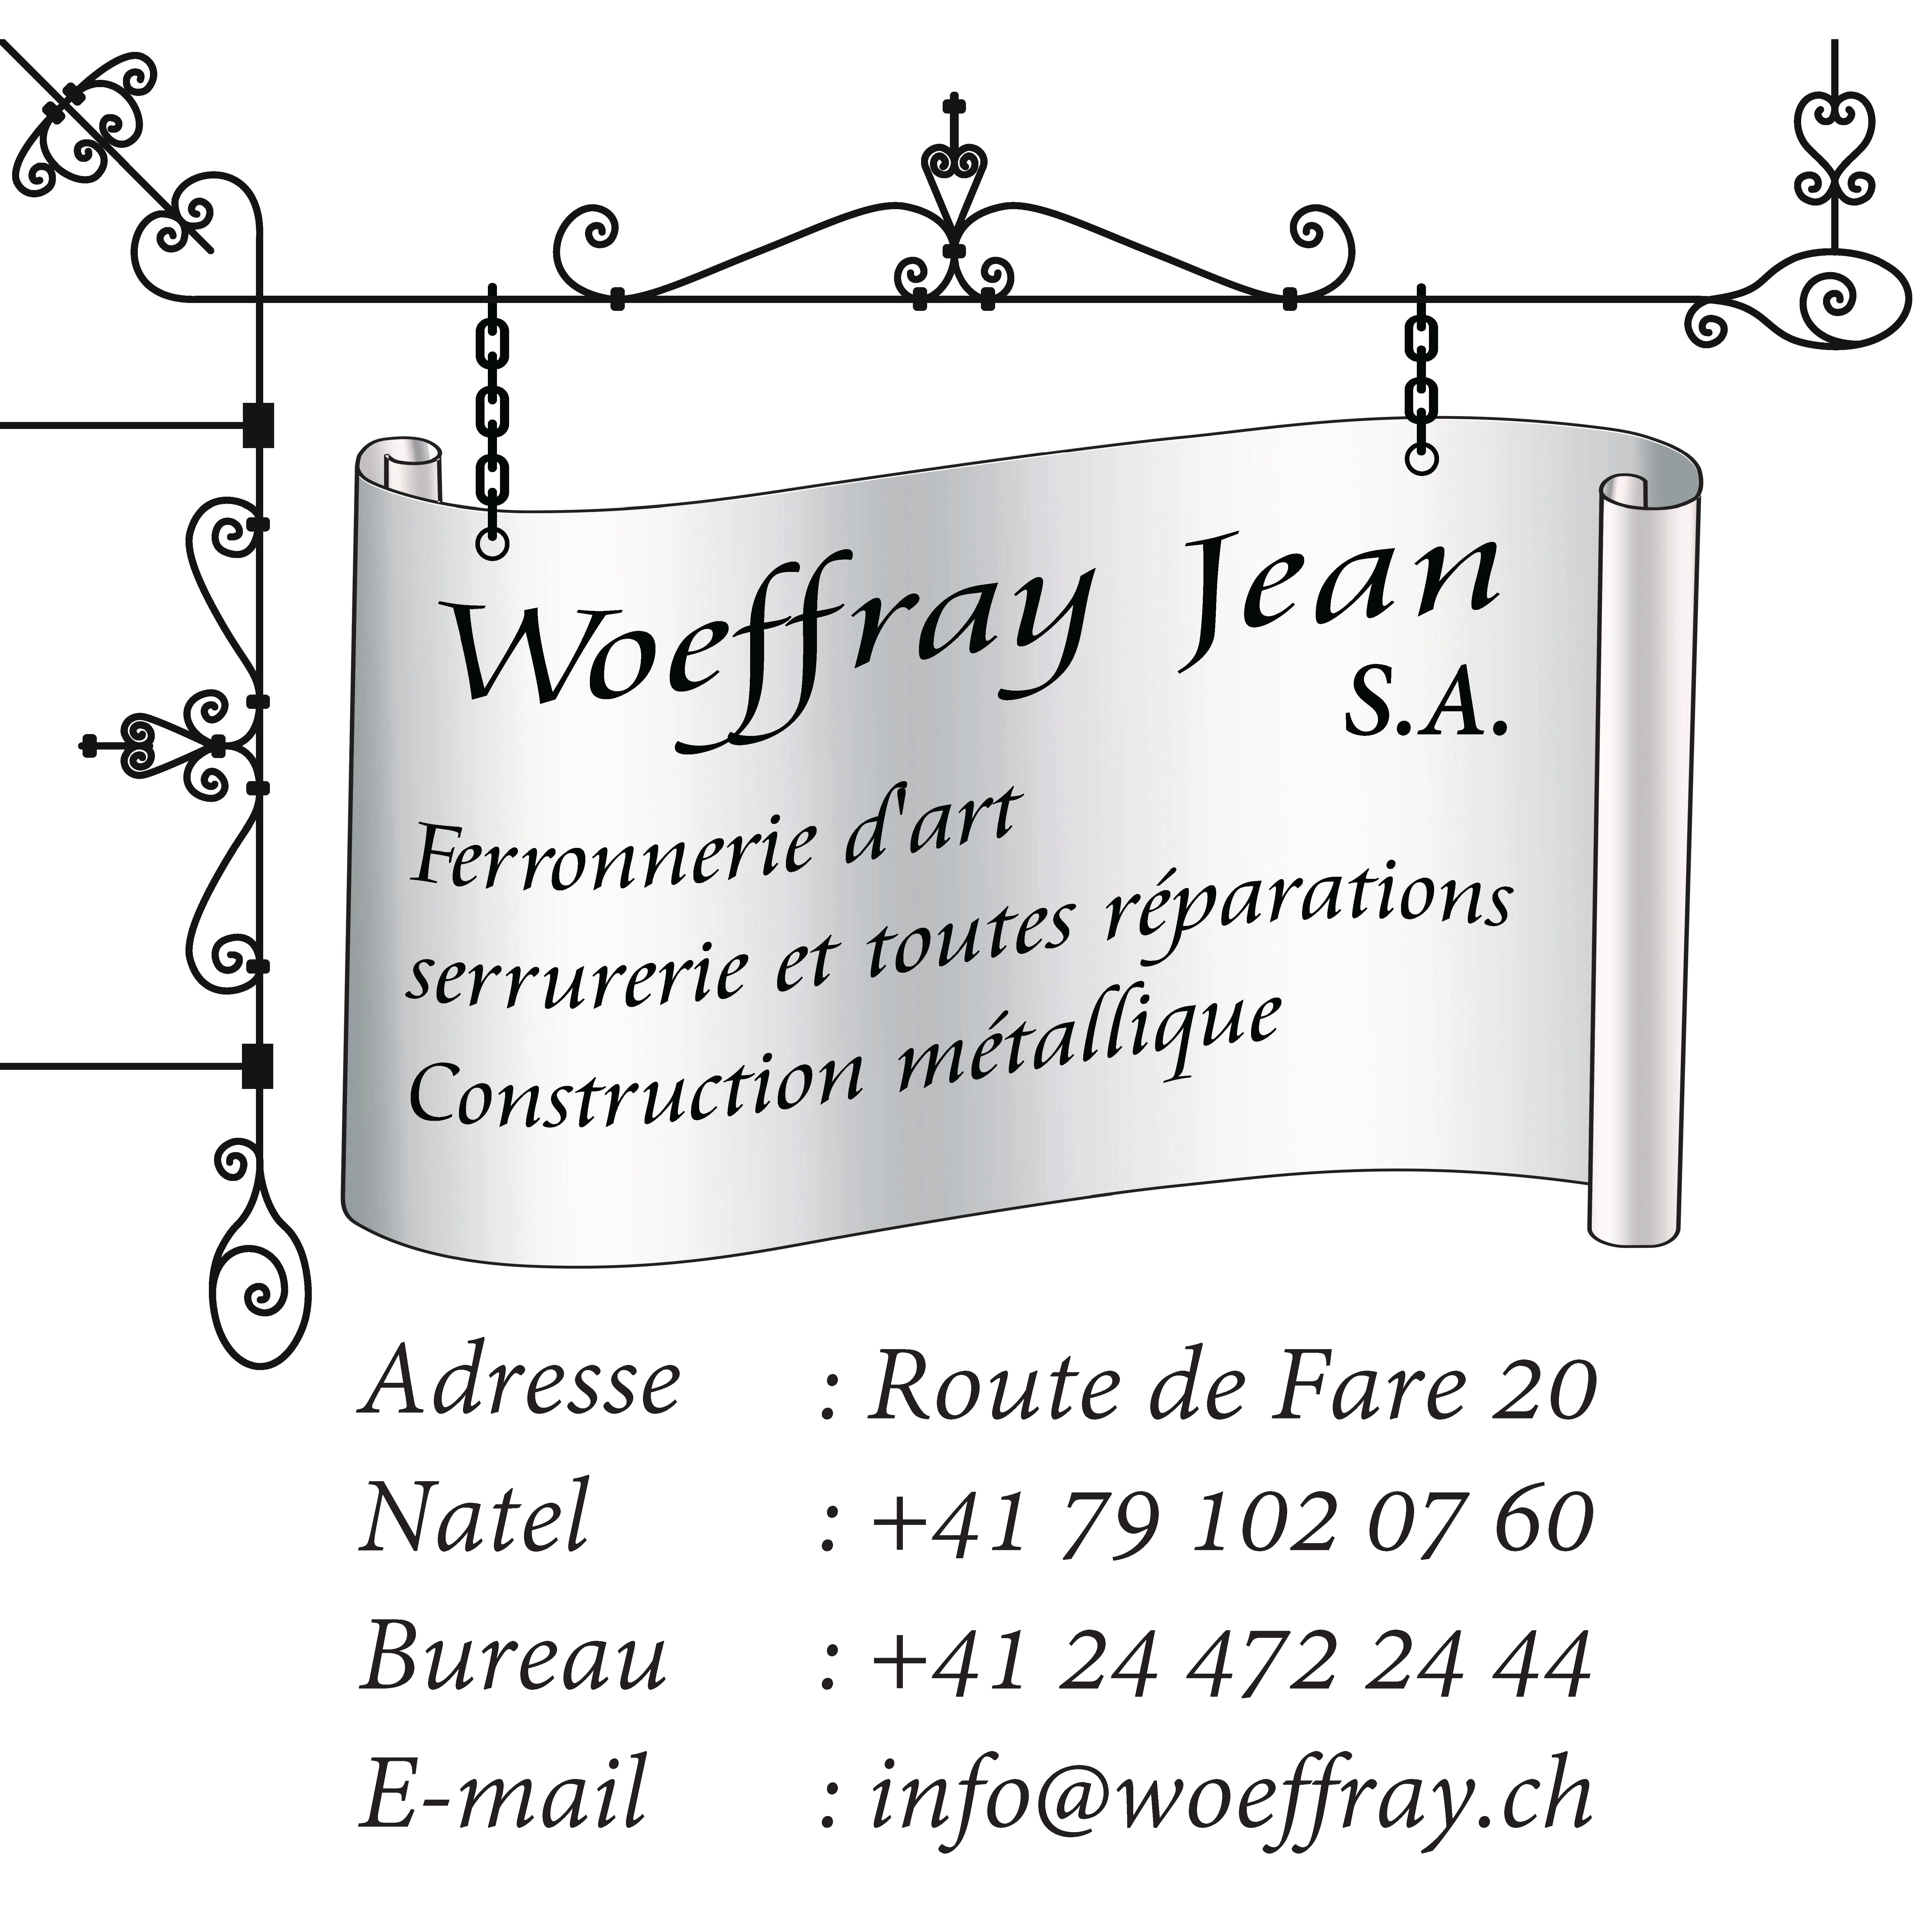 Woeffray Jean SA